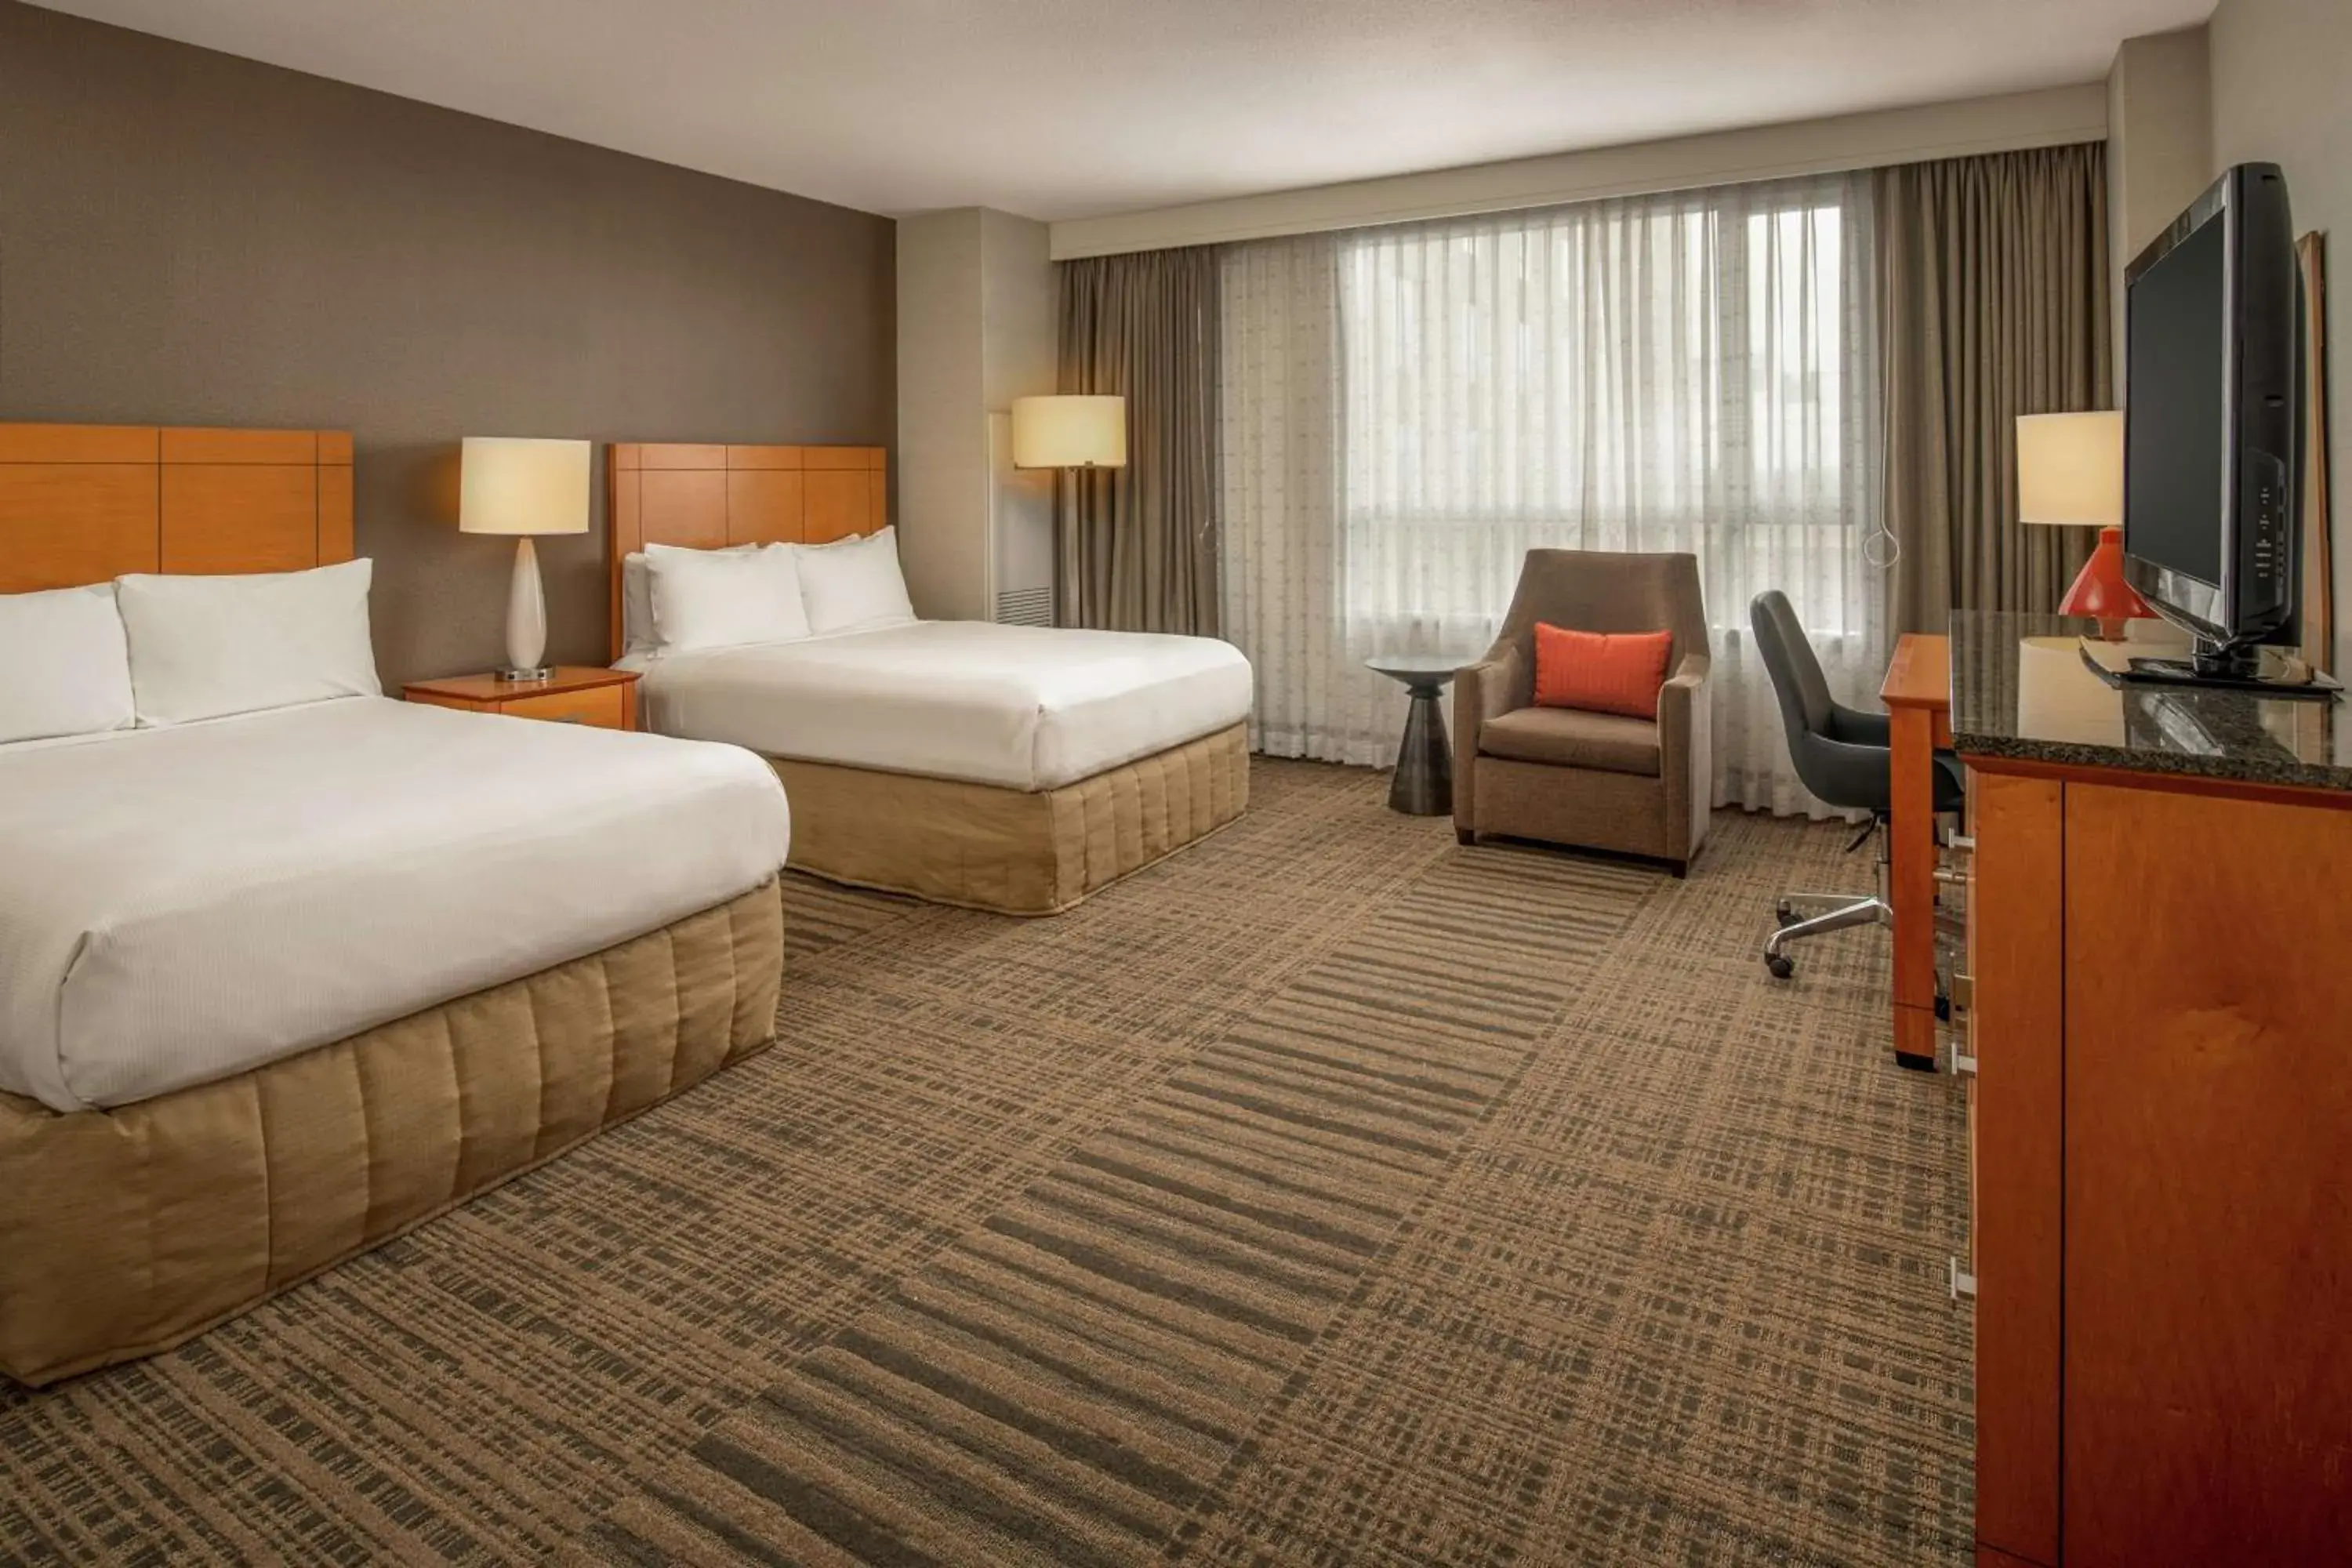 Bedroom in Hilton Vancouver Washington